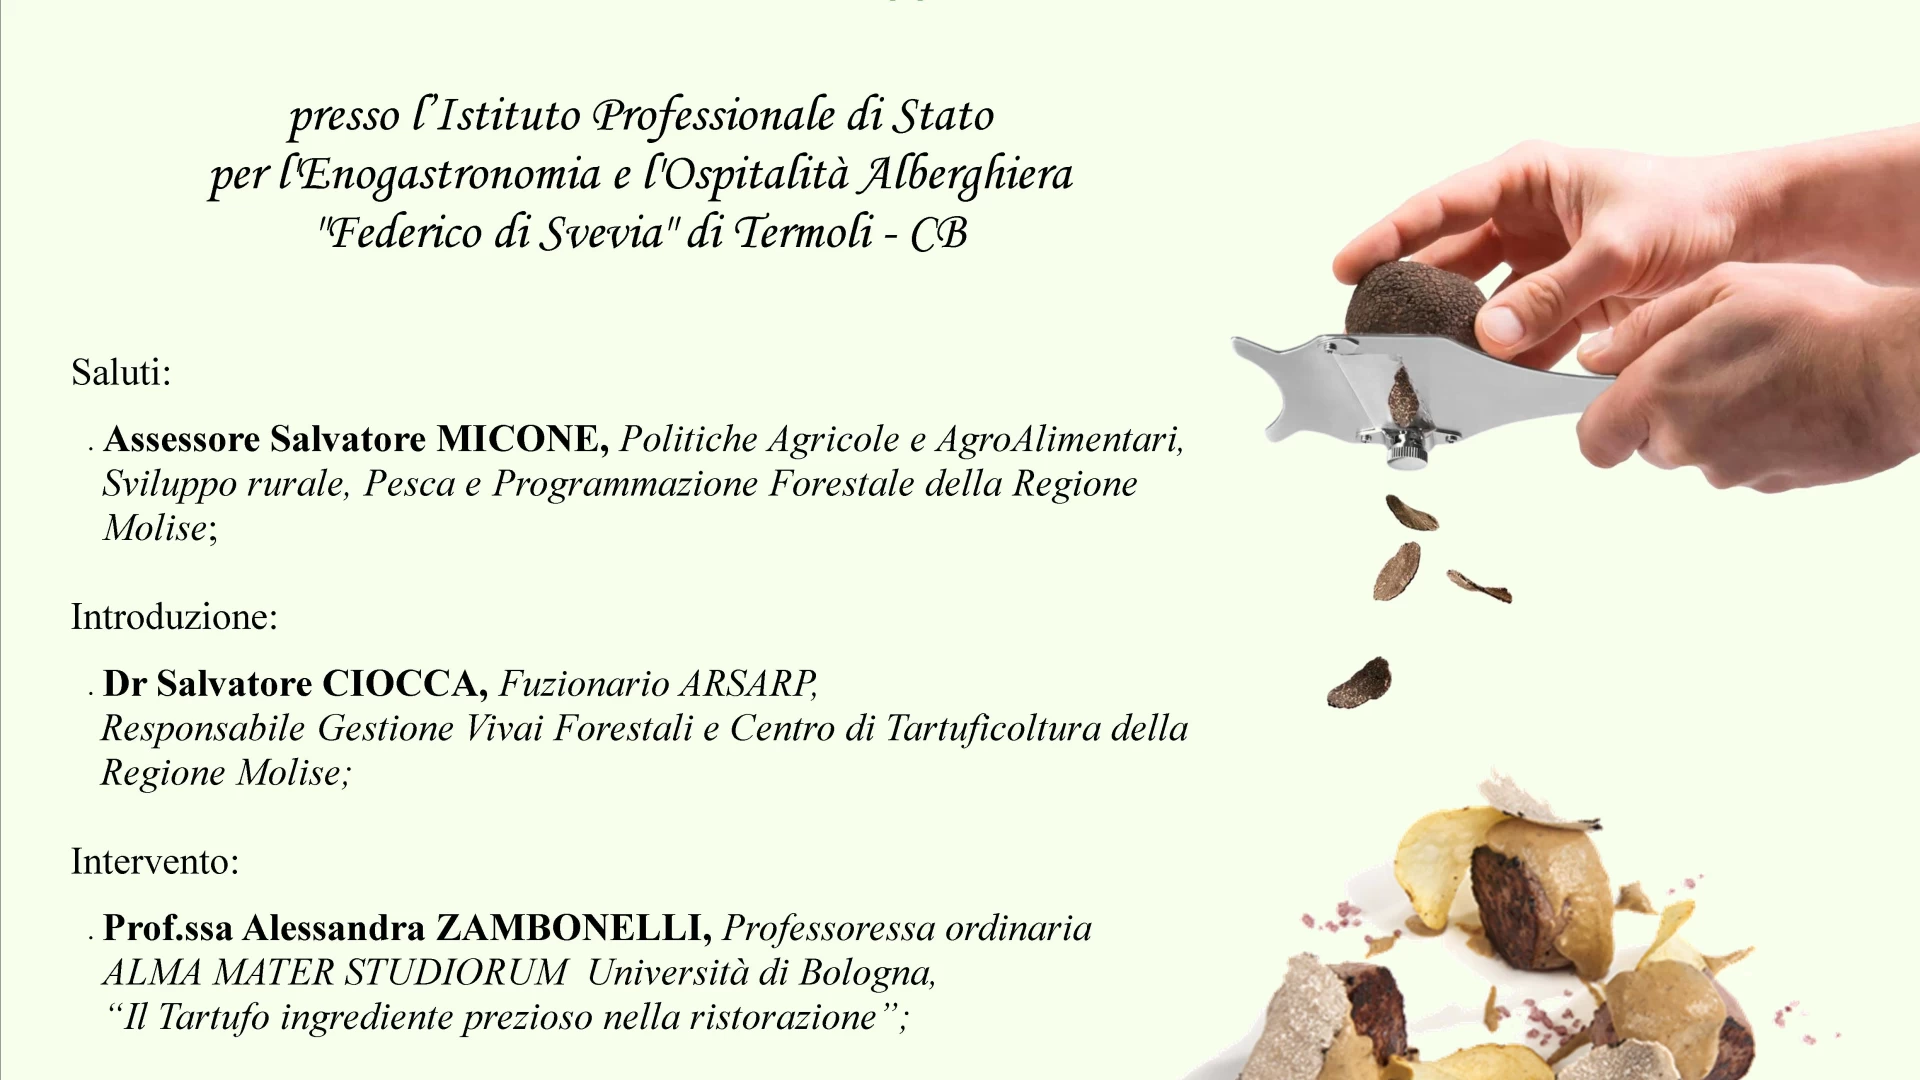 "Il tartufo nel Piatto", mercoledì 29 maggio l'evento a Termoli. La nota dell'assessore regionale Micone.